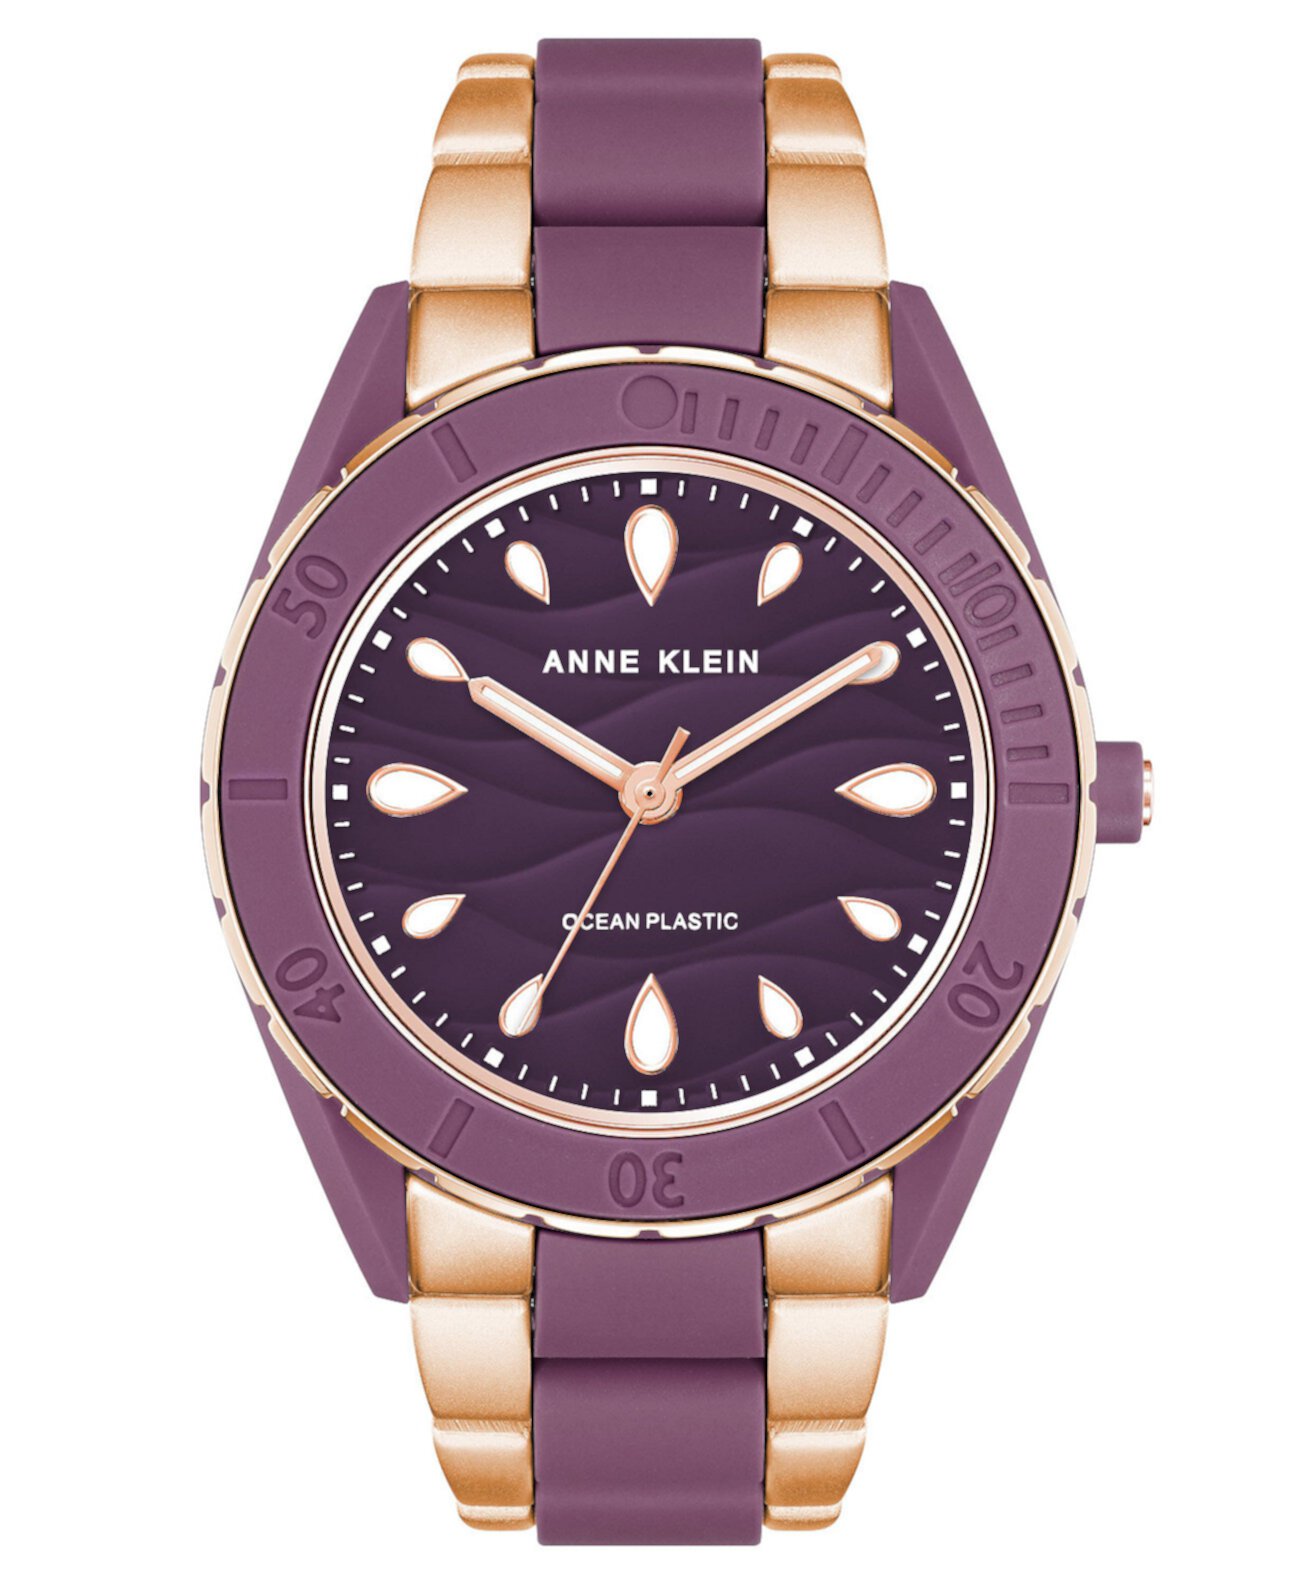 Женские кварцевые часы с тремя стрелками с пластиковым браслетом цвета розового золота и фиолетового цвета на солнечных батареях Oceanwork, 38,5 мм Anne Klein